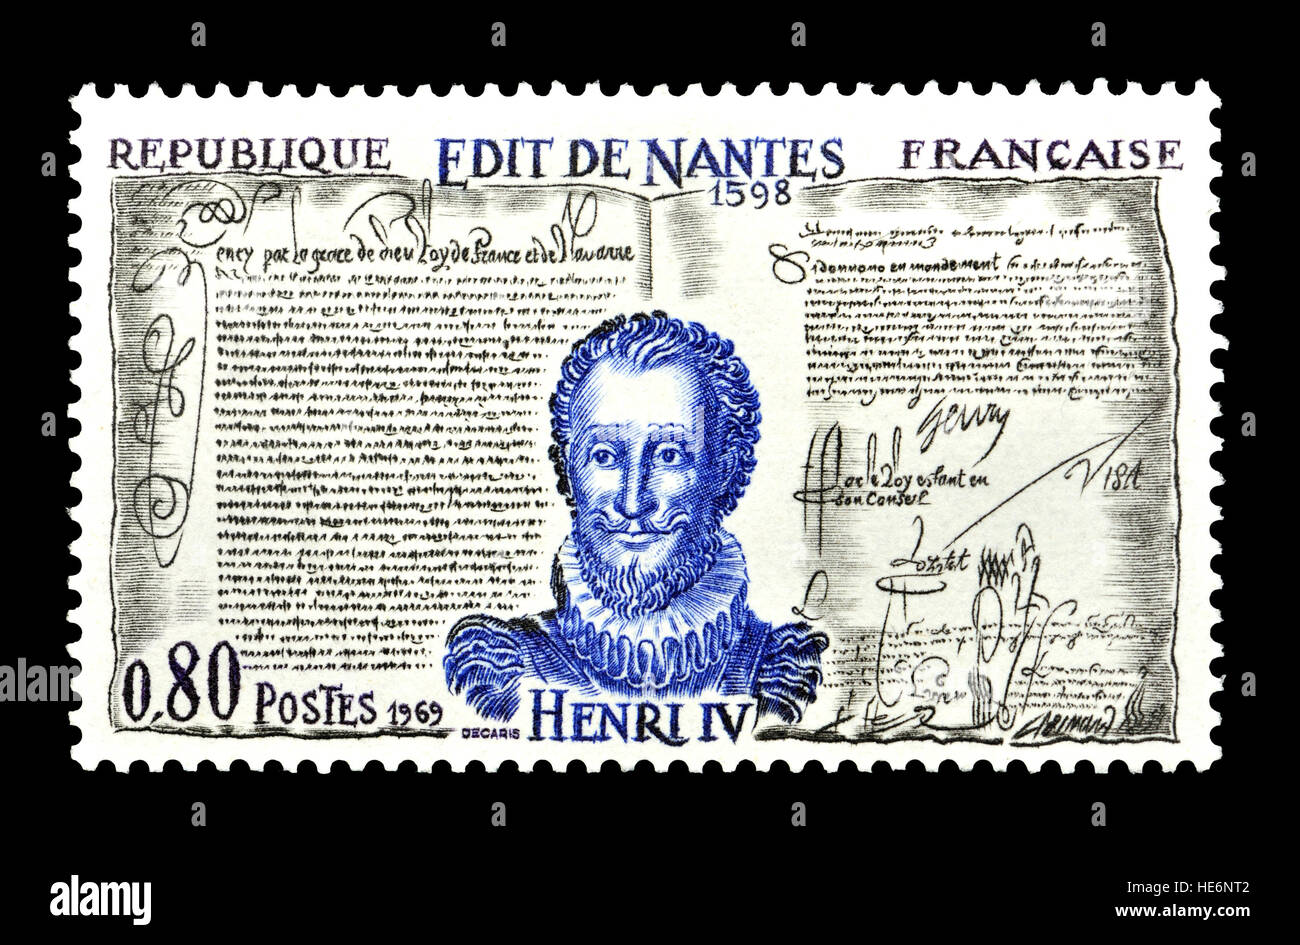 Il francese francobollo (1969) : Editto di Nantes / Edit de Nantes. Firmato 1598 dal Re Enrico IV di Francia, concessi i protestanti calvinista della Francia (.. Foto Stock